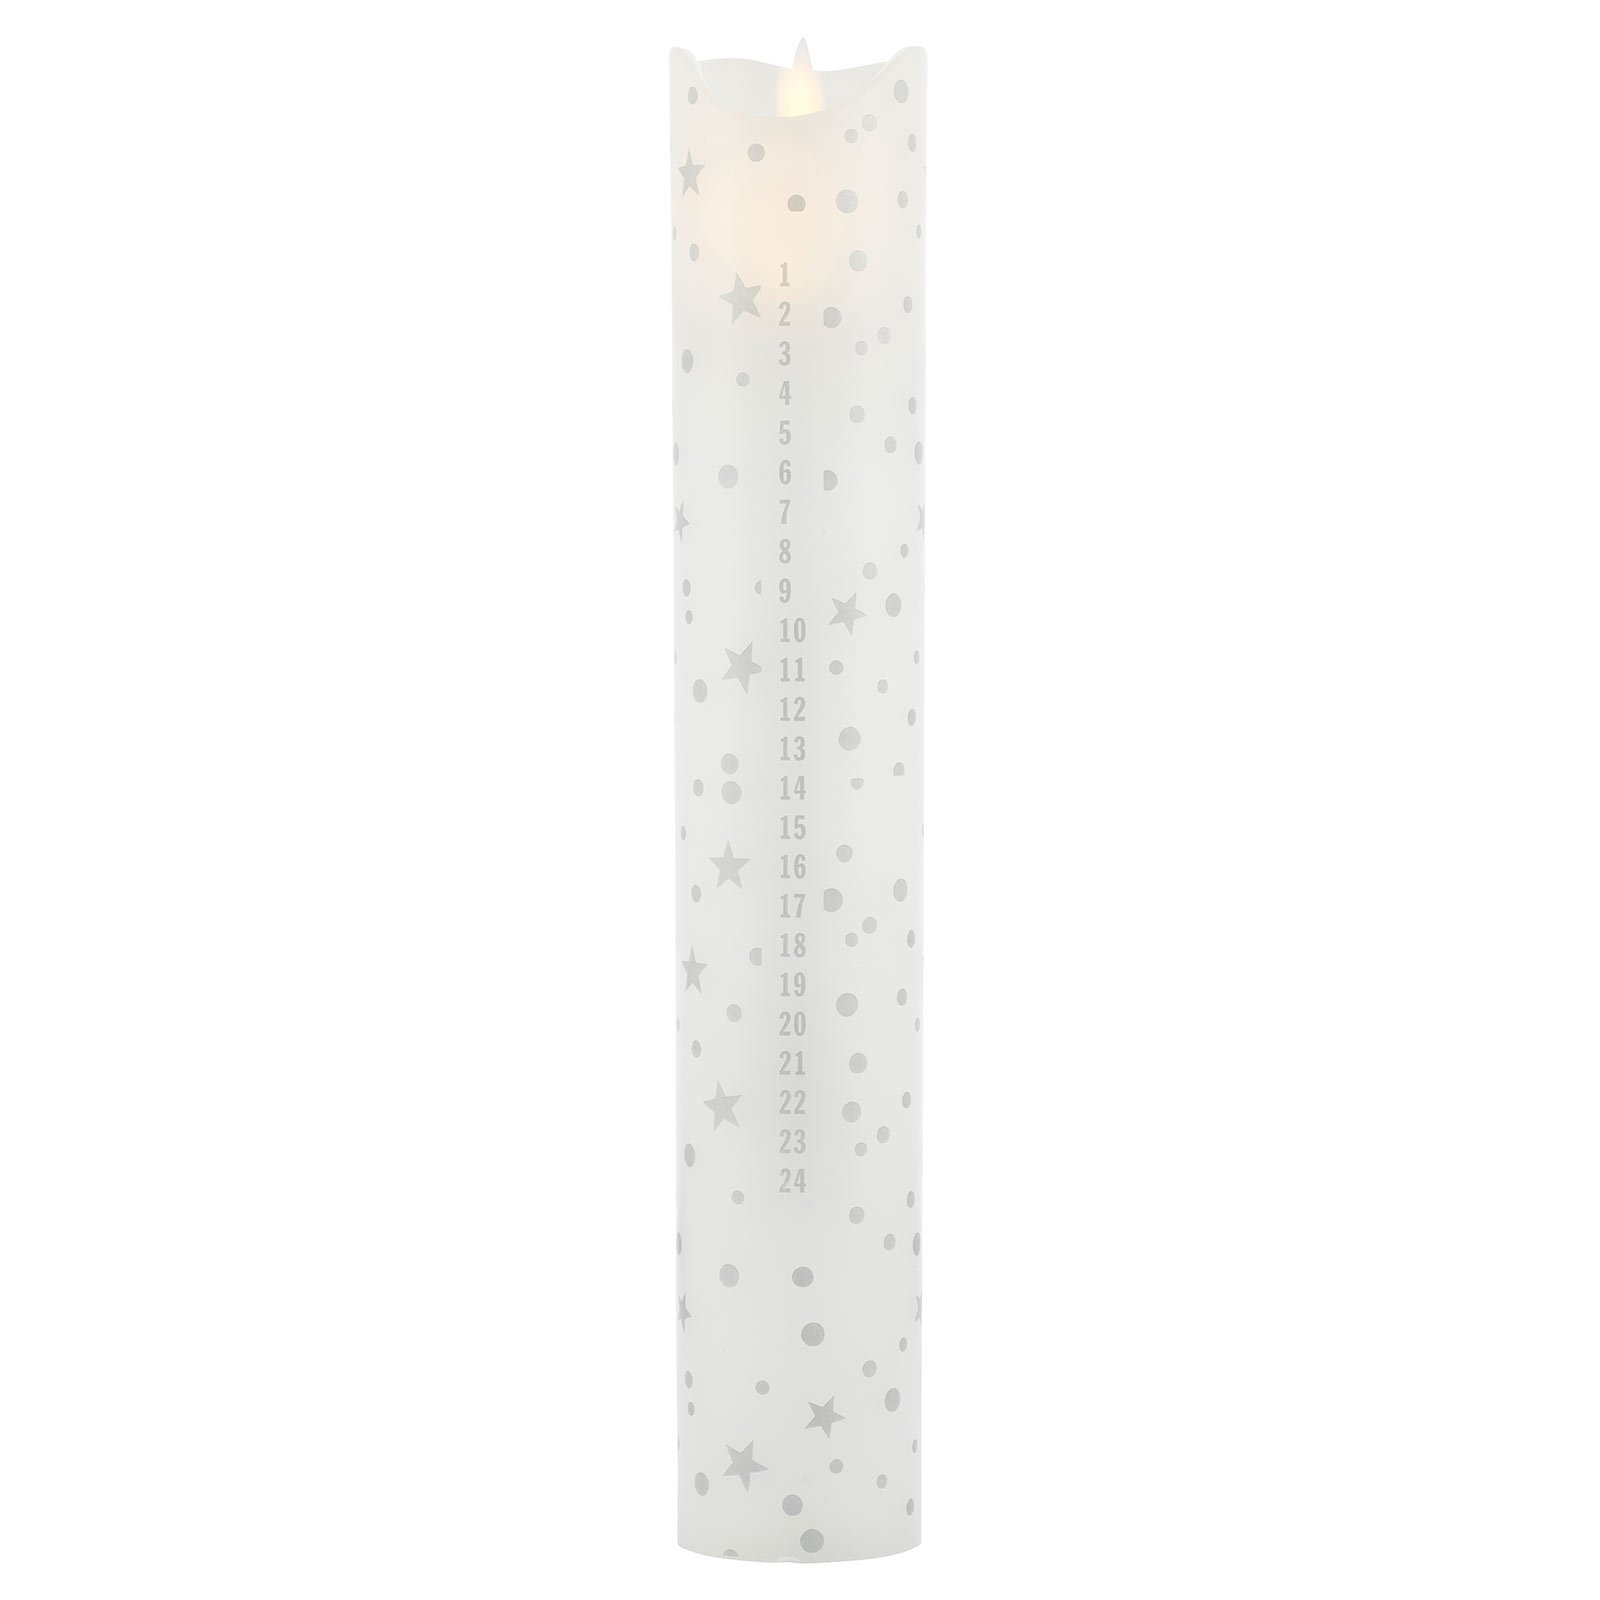 LED свещ Сара Календар, бяла/романтична, височина 29 см